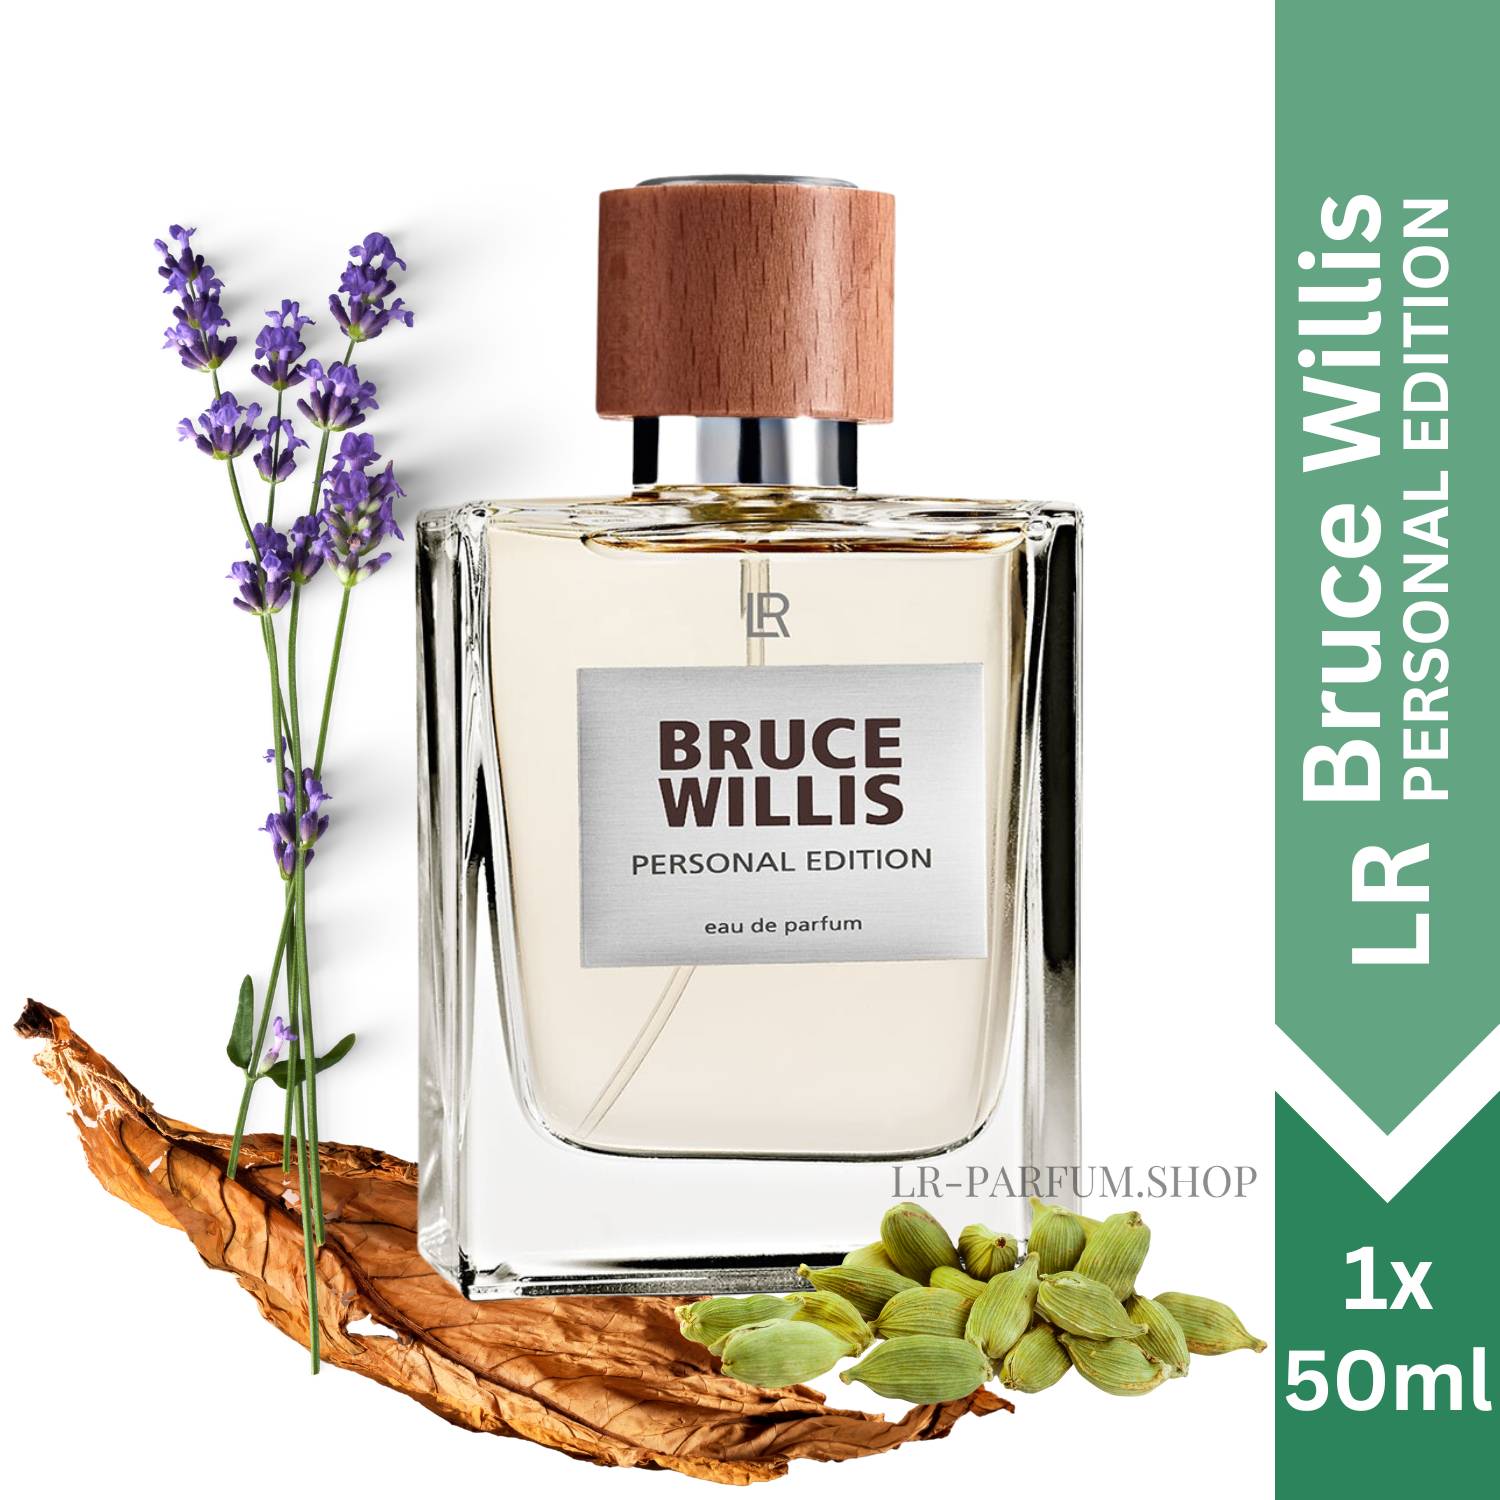 LR Bruce Willis Personal Edition - Eau de Parfum 50ml - LR-Parfum.shop